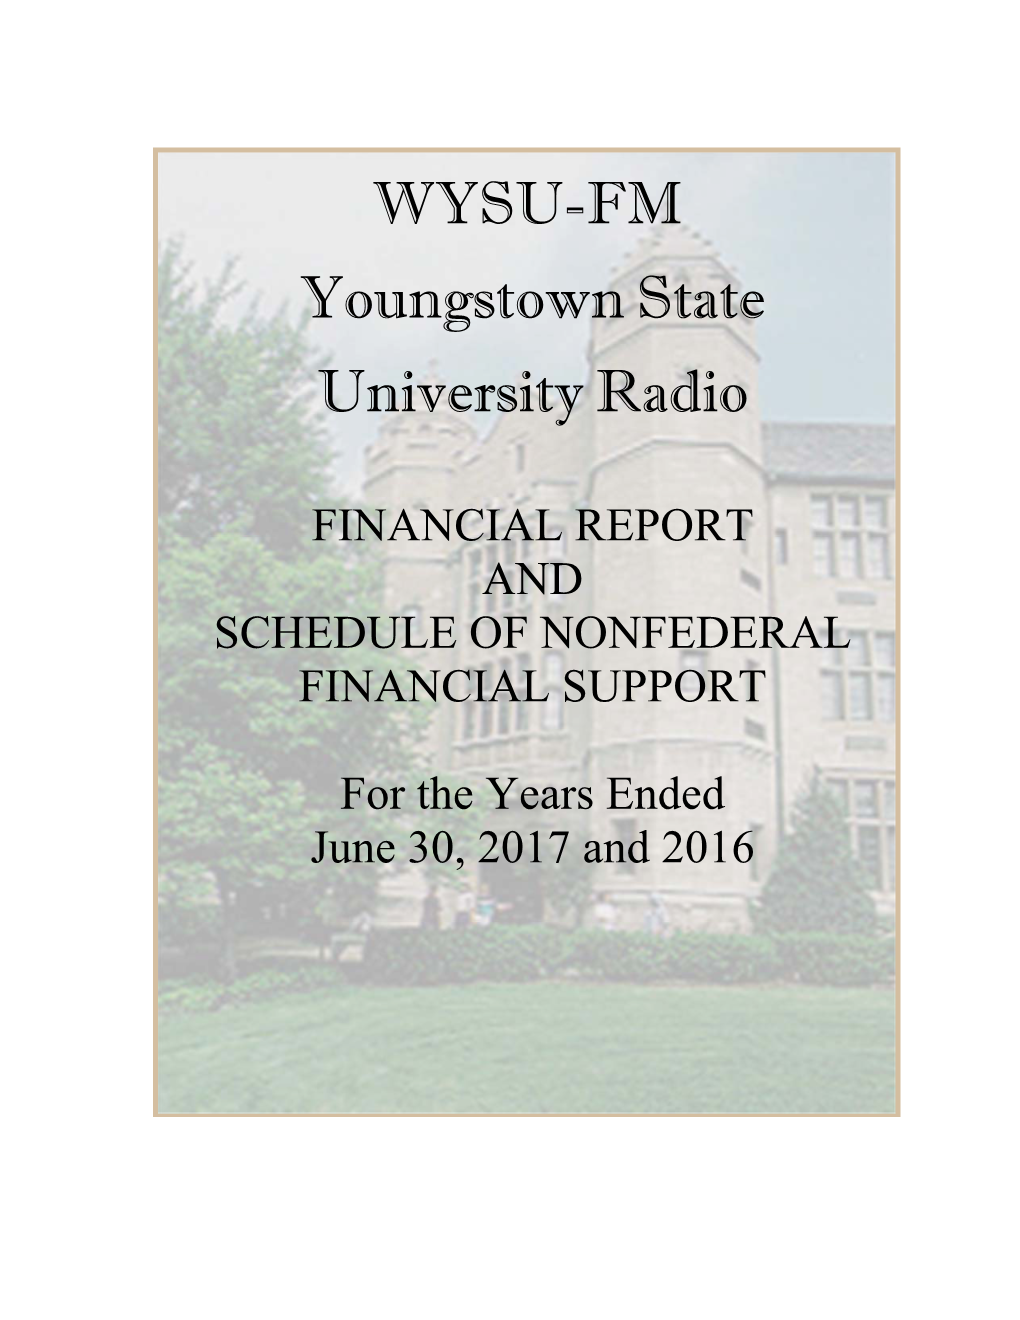 WYSU-FM Youngstown State University Radio